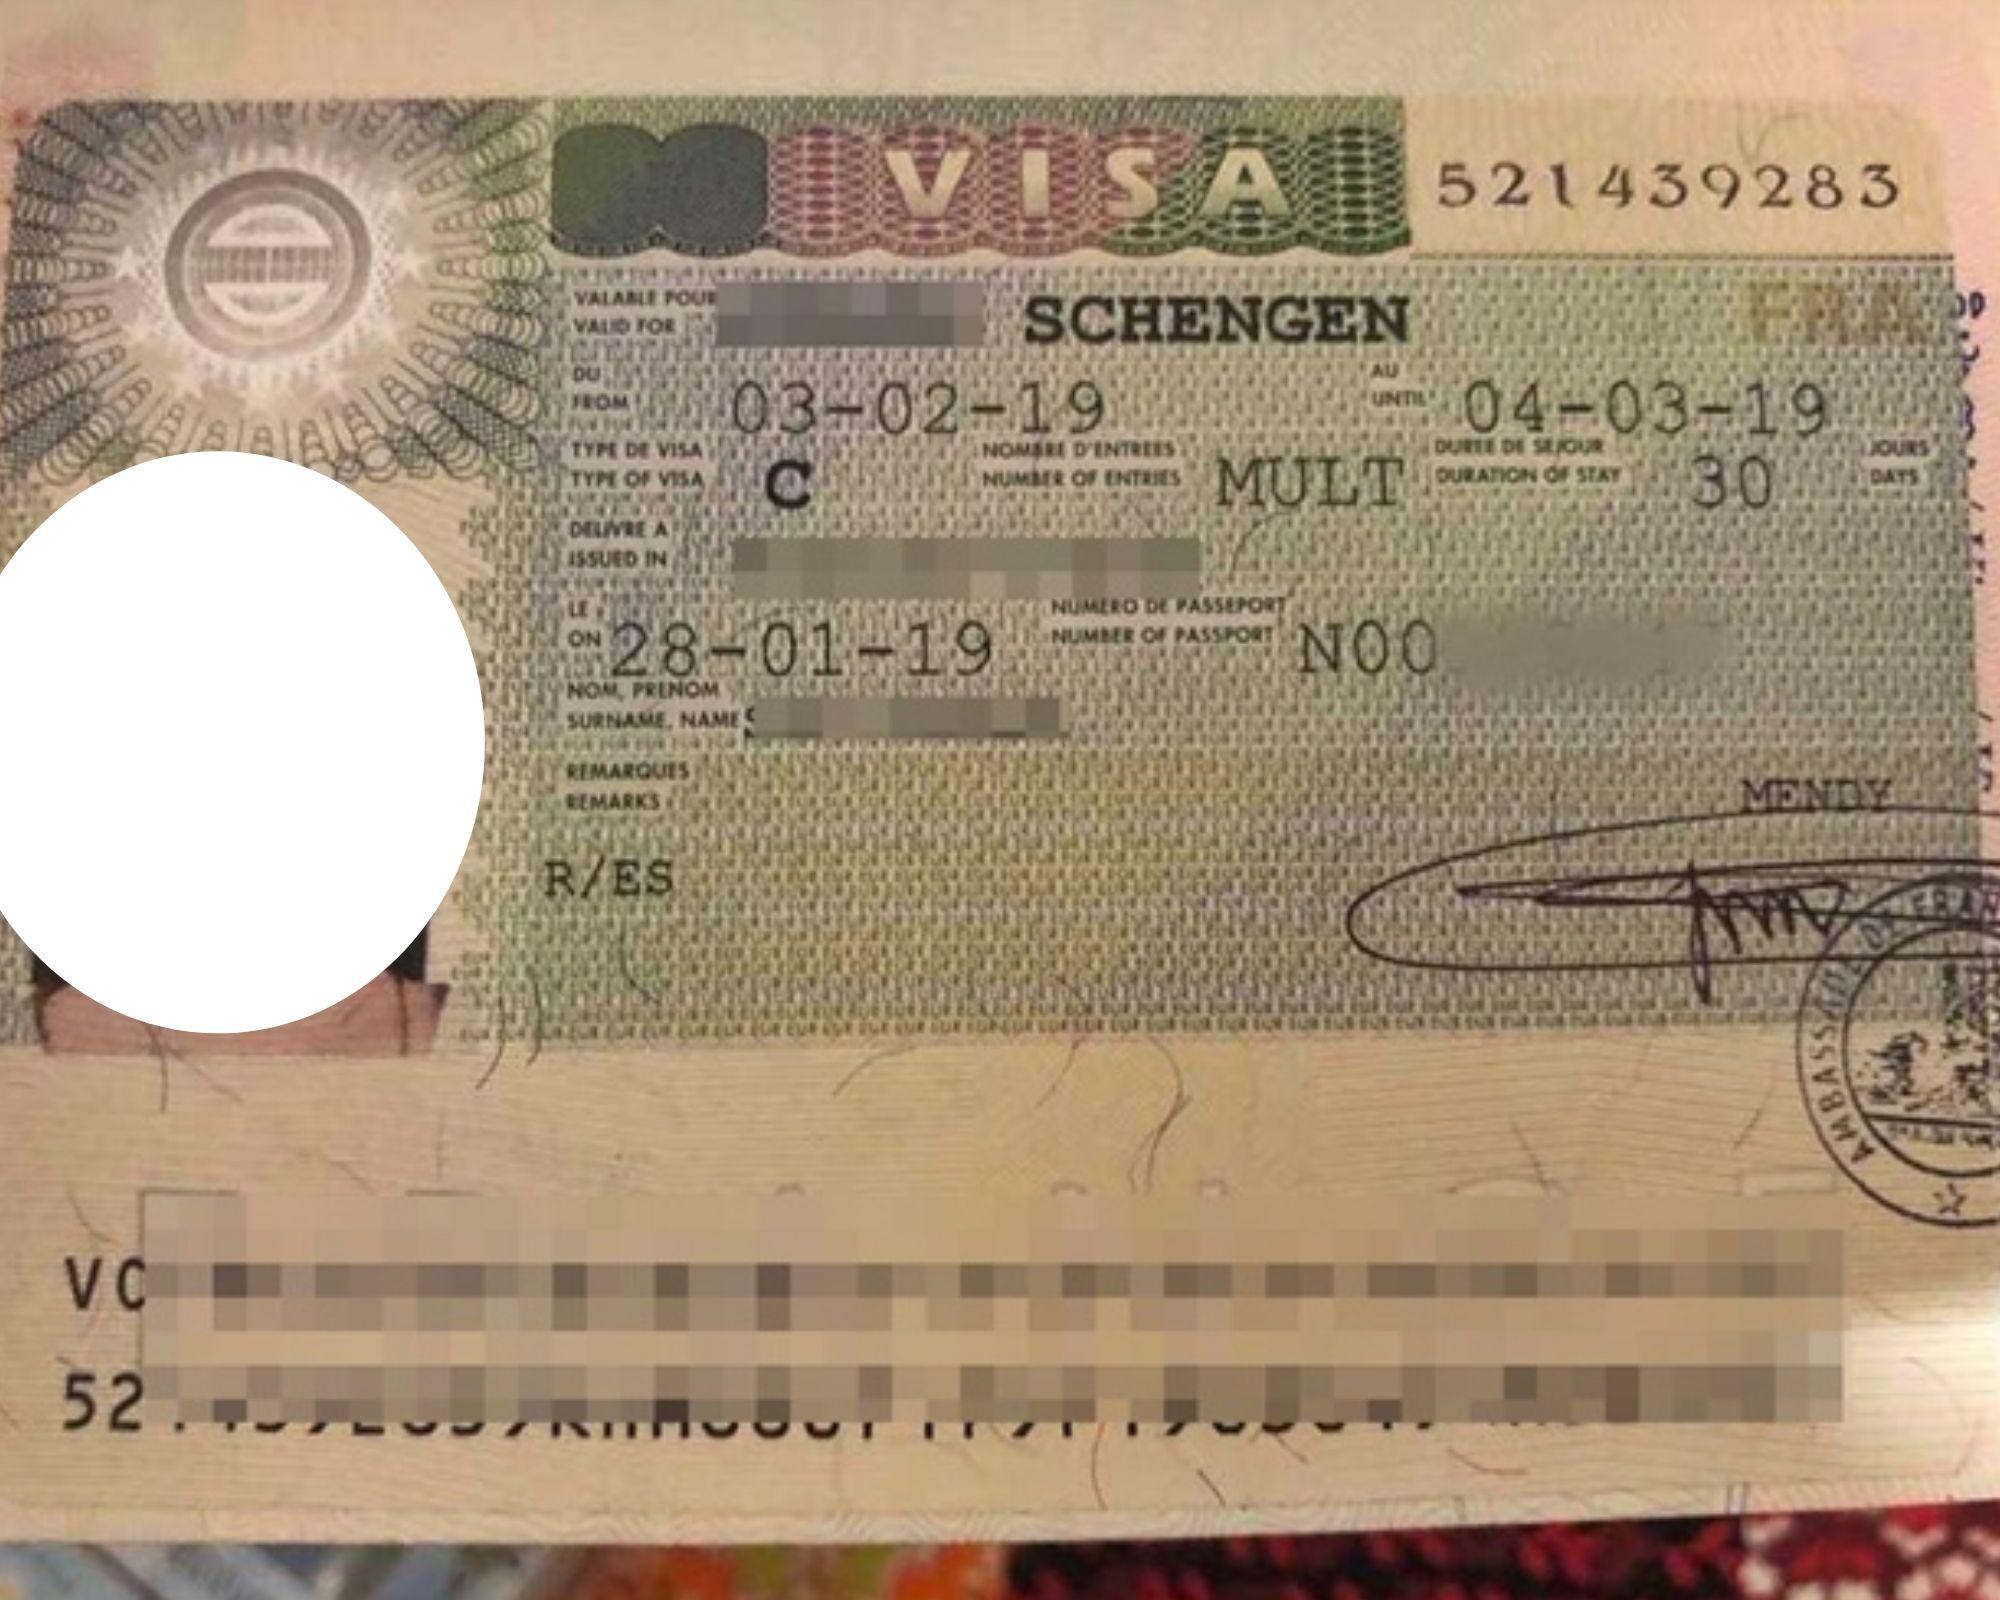 Dịch vụ tư vấn visa đi Thụy Sĩ diện thăm thân uy tín